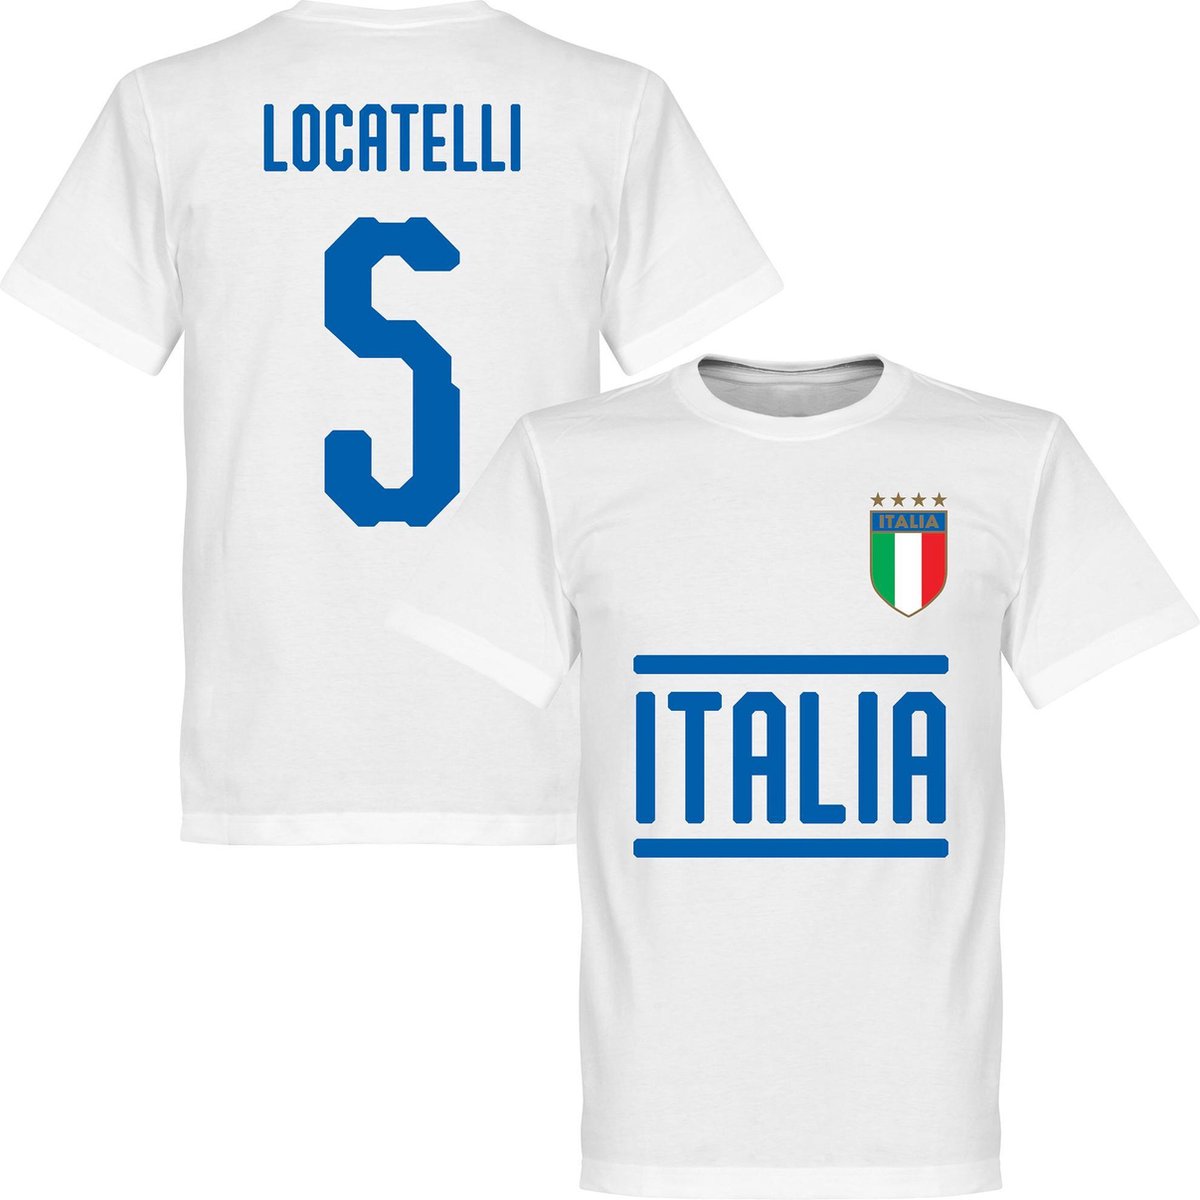 Italië Locatelli 5 Team T-Shirt - WIt - M